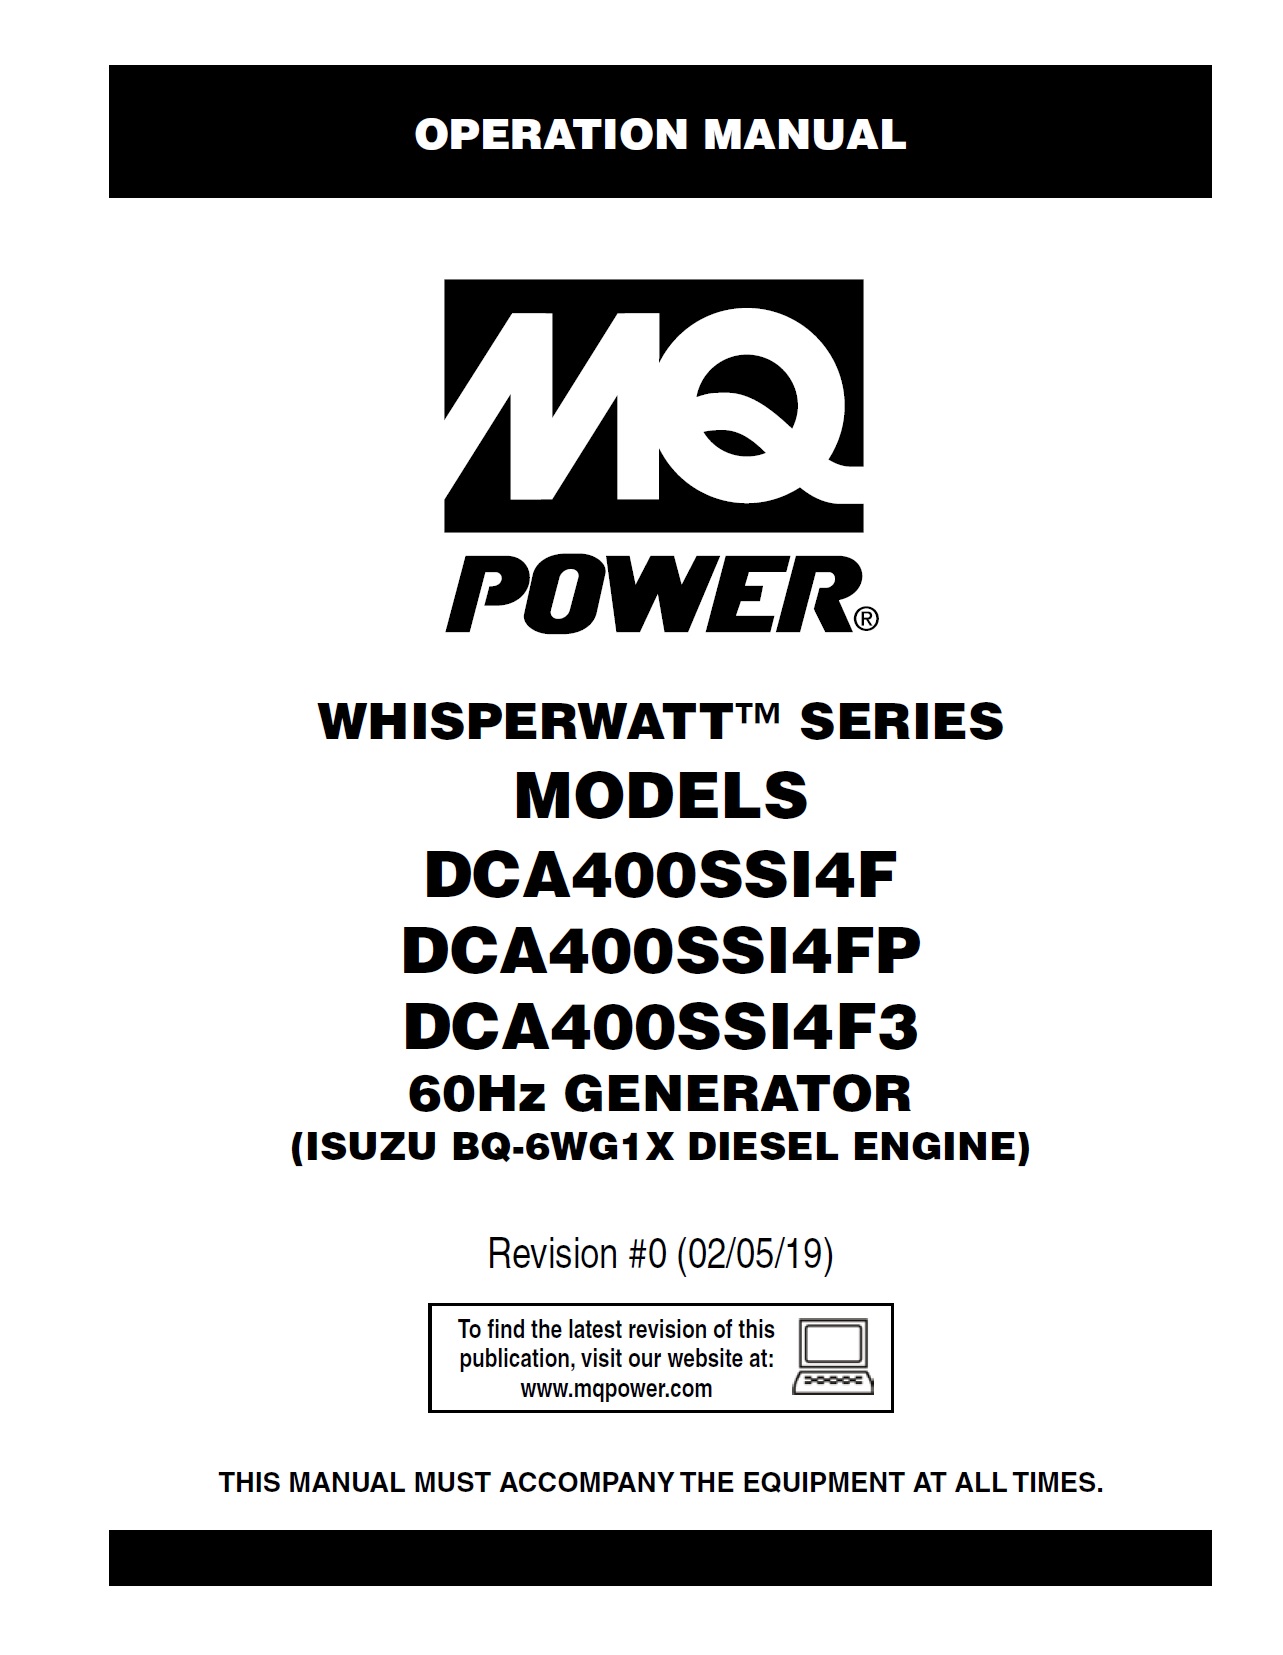 Generators-portable-whisperwatt-DCA400SSI4F-series-rev-0-60hz-op-manual